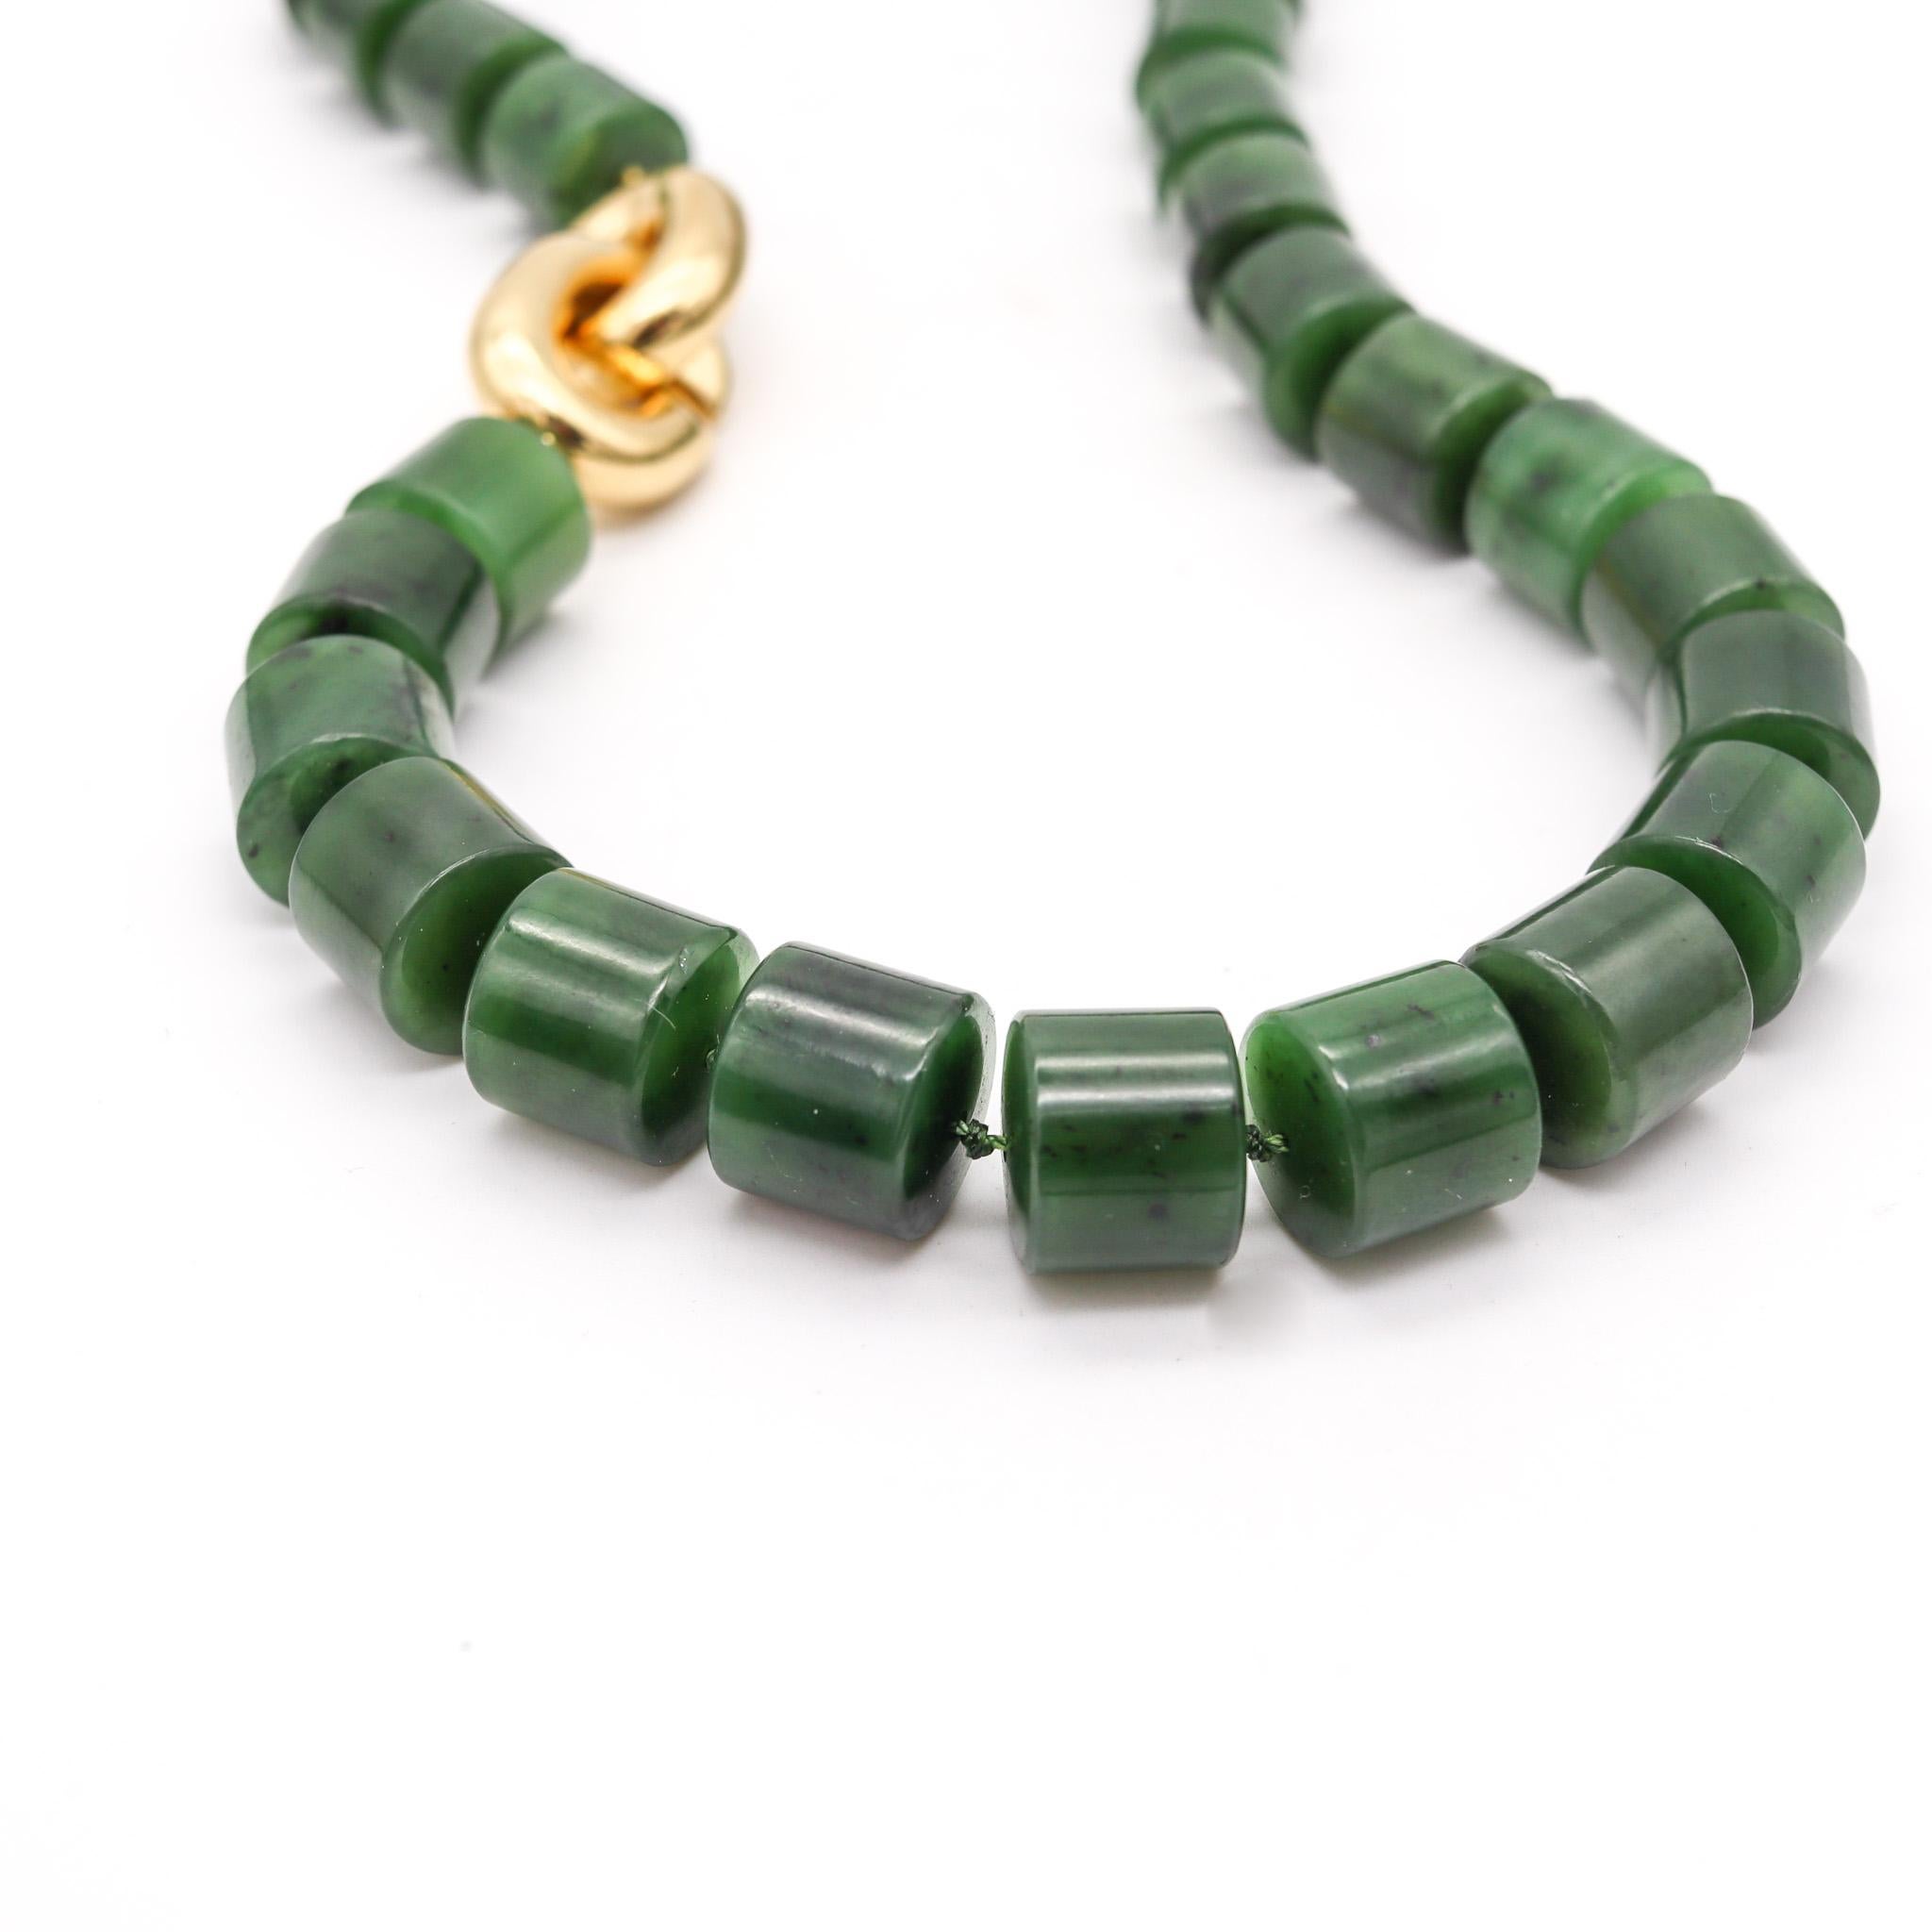 Halskette aus grüner Nephrit-Jade, entworfen von Angela Cummings.

Ein sehr seltenes modernistisches Werk, das 1993 von Angela Cummings in New York City geschaffen wurde. Diese elegante Halskette besteht aus mehreren aus grüner Jade geschnitzten